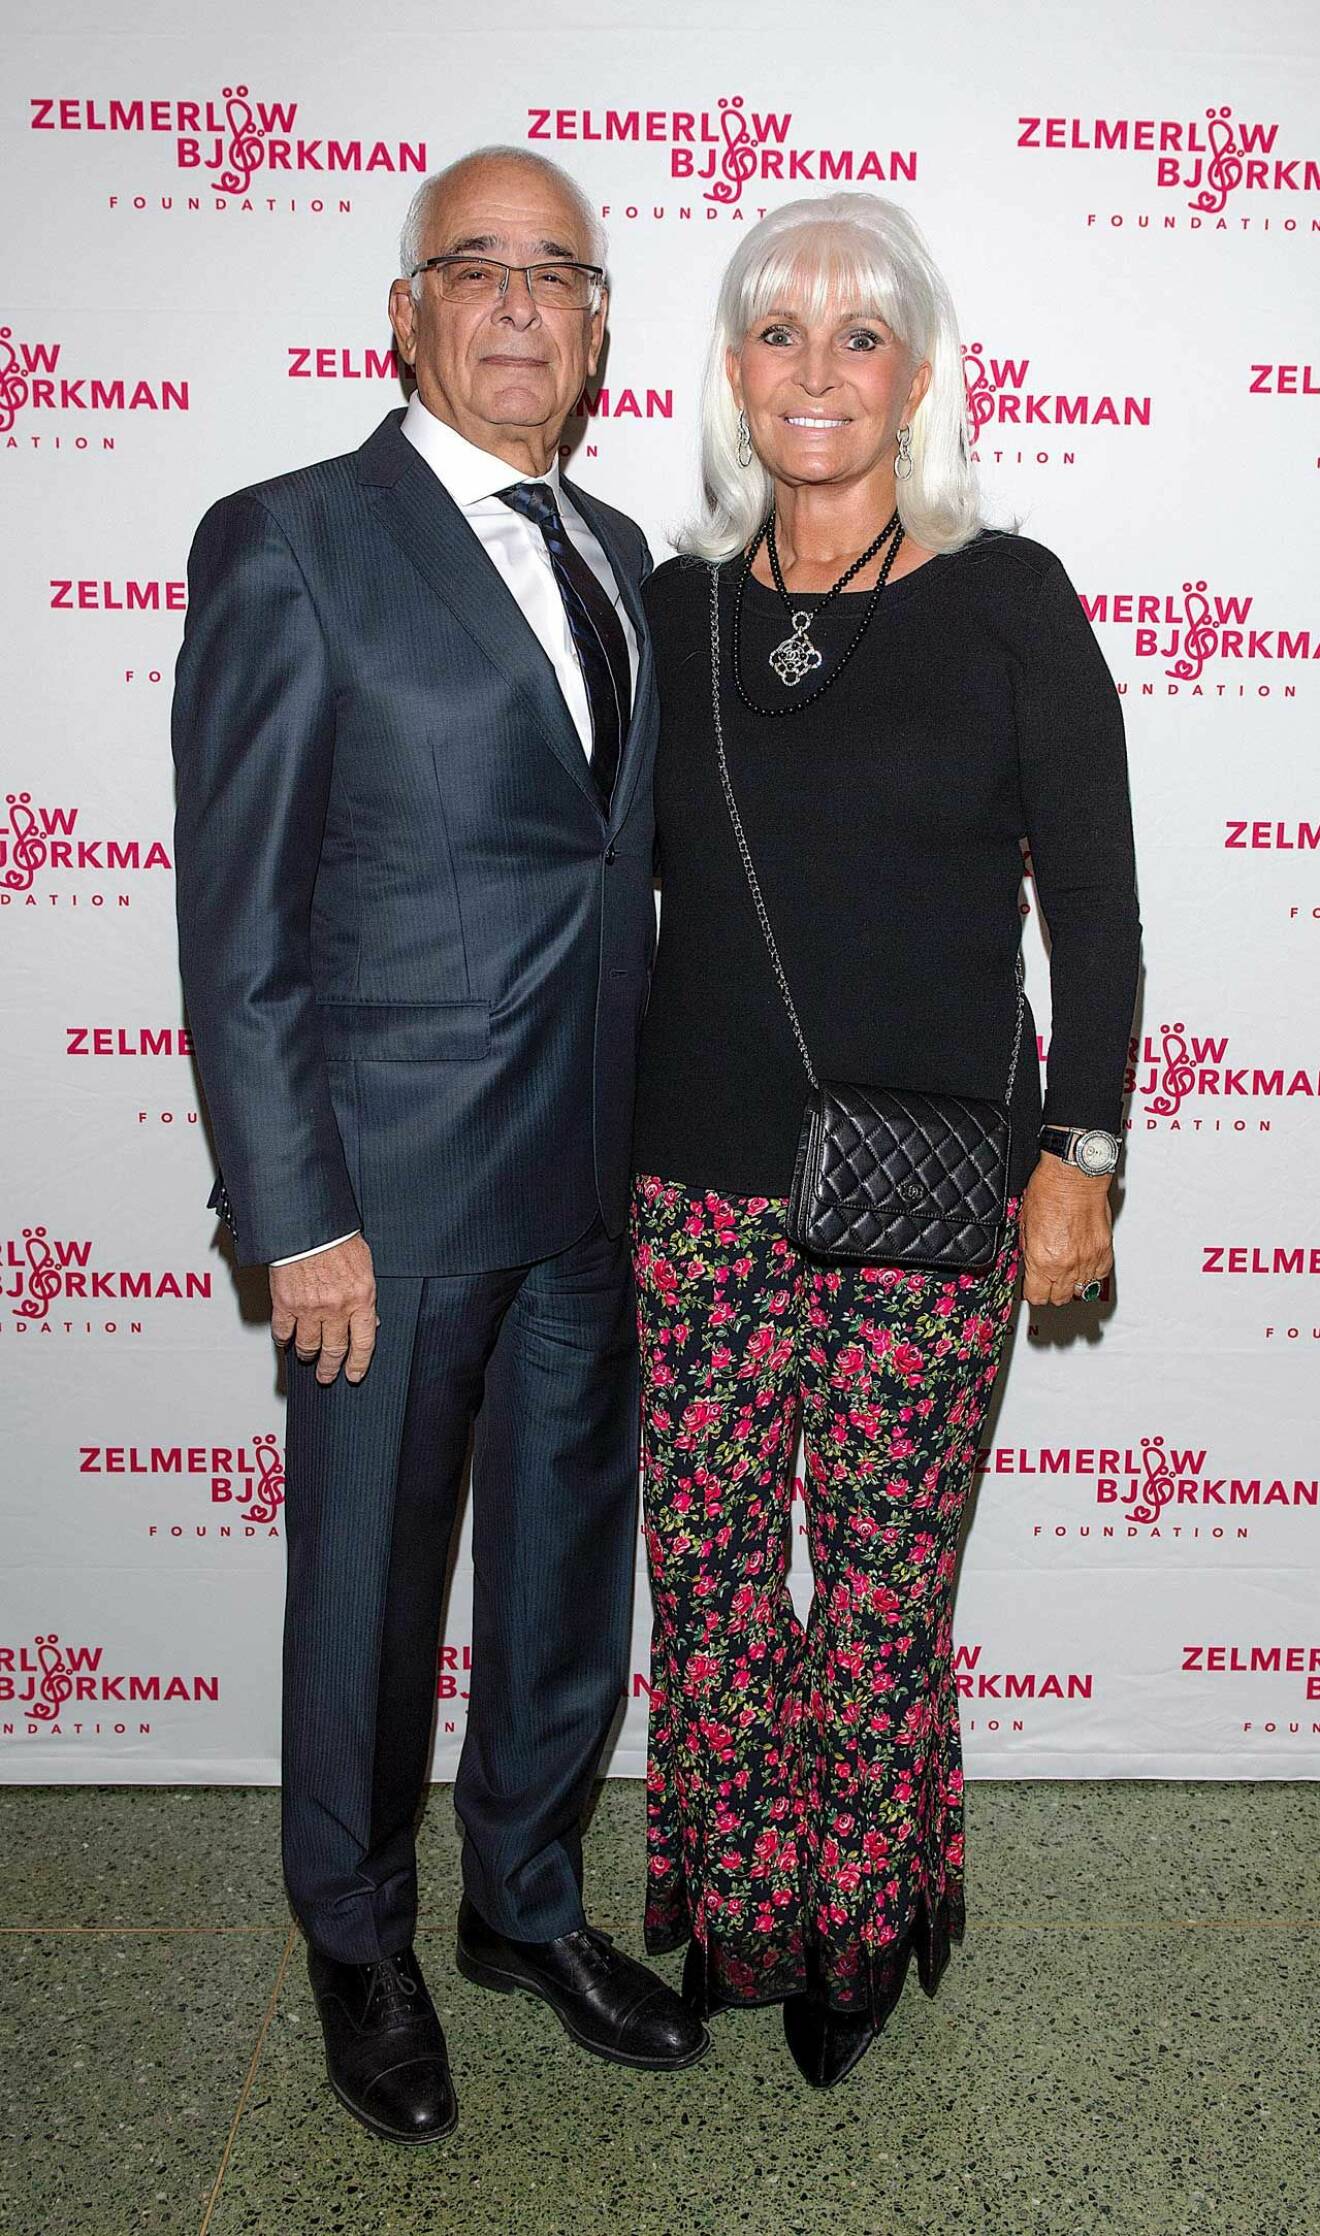 Trevliga paret Kent Löwenberg och Grete Qviberg ville stötta Zelmerlöw & Björkman Foundations galamingel. 